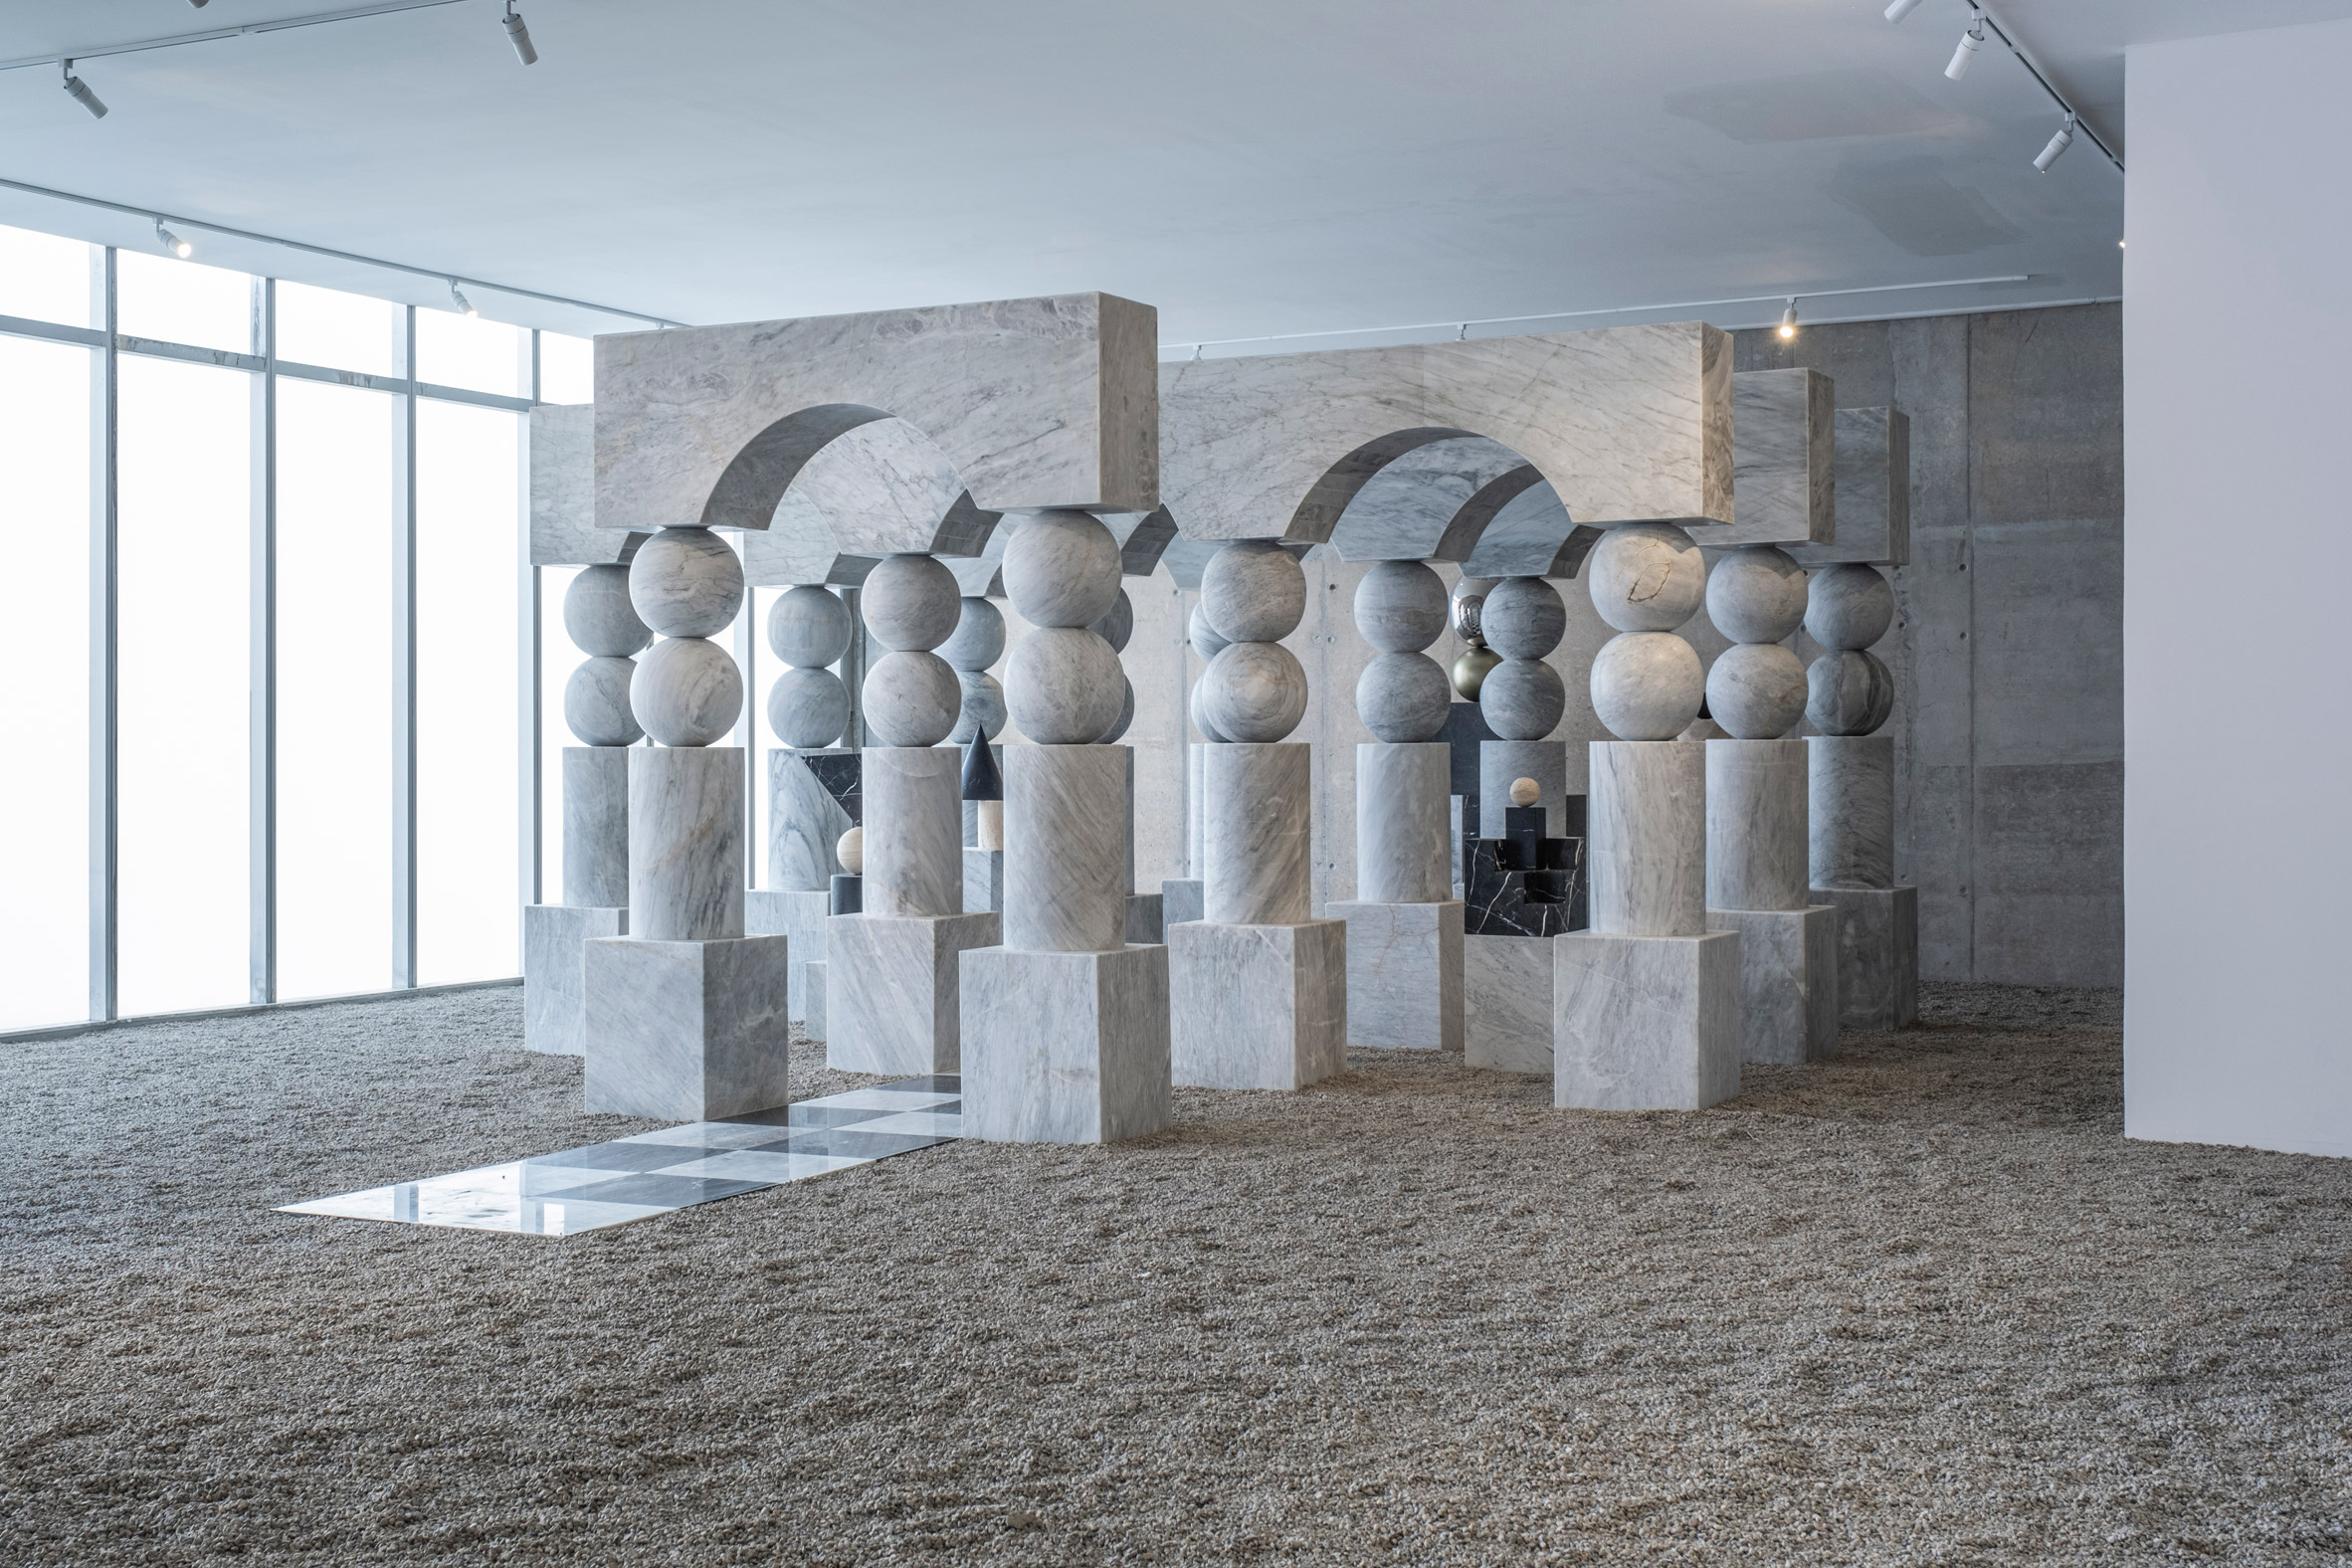 皮拉尔·泽塔和安德烈斯·蒙尼尔在菲利亚美术馆创作了对比鲜明的石头装置|ART-Arrakis | 建筑室内设计的创新与灵感